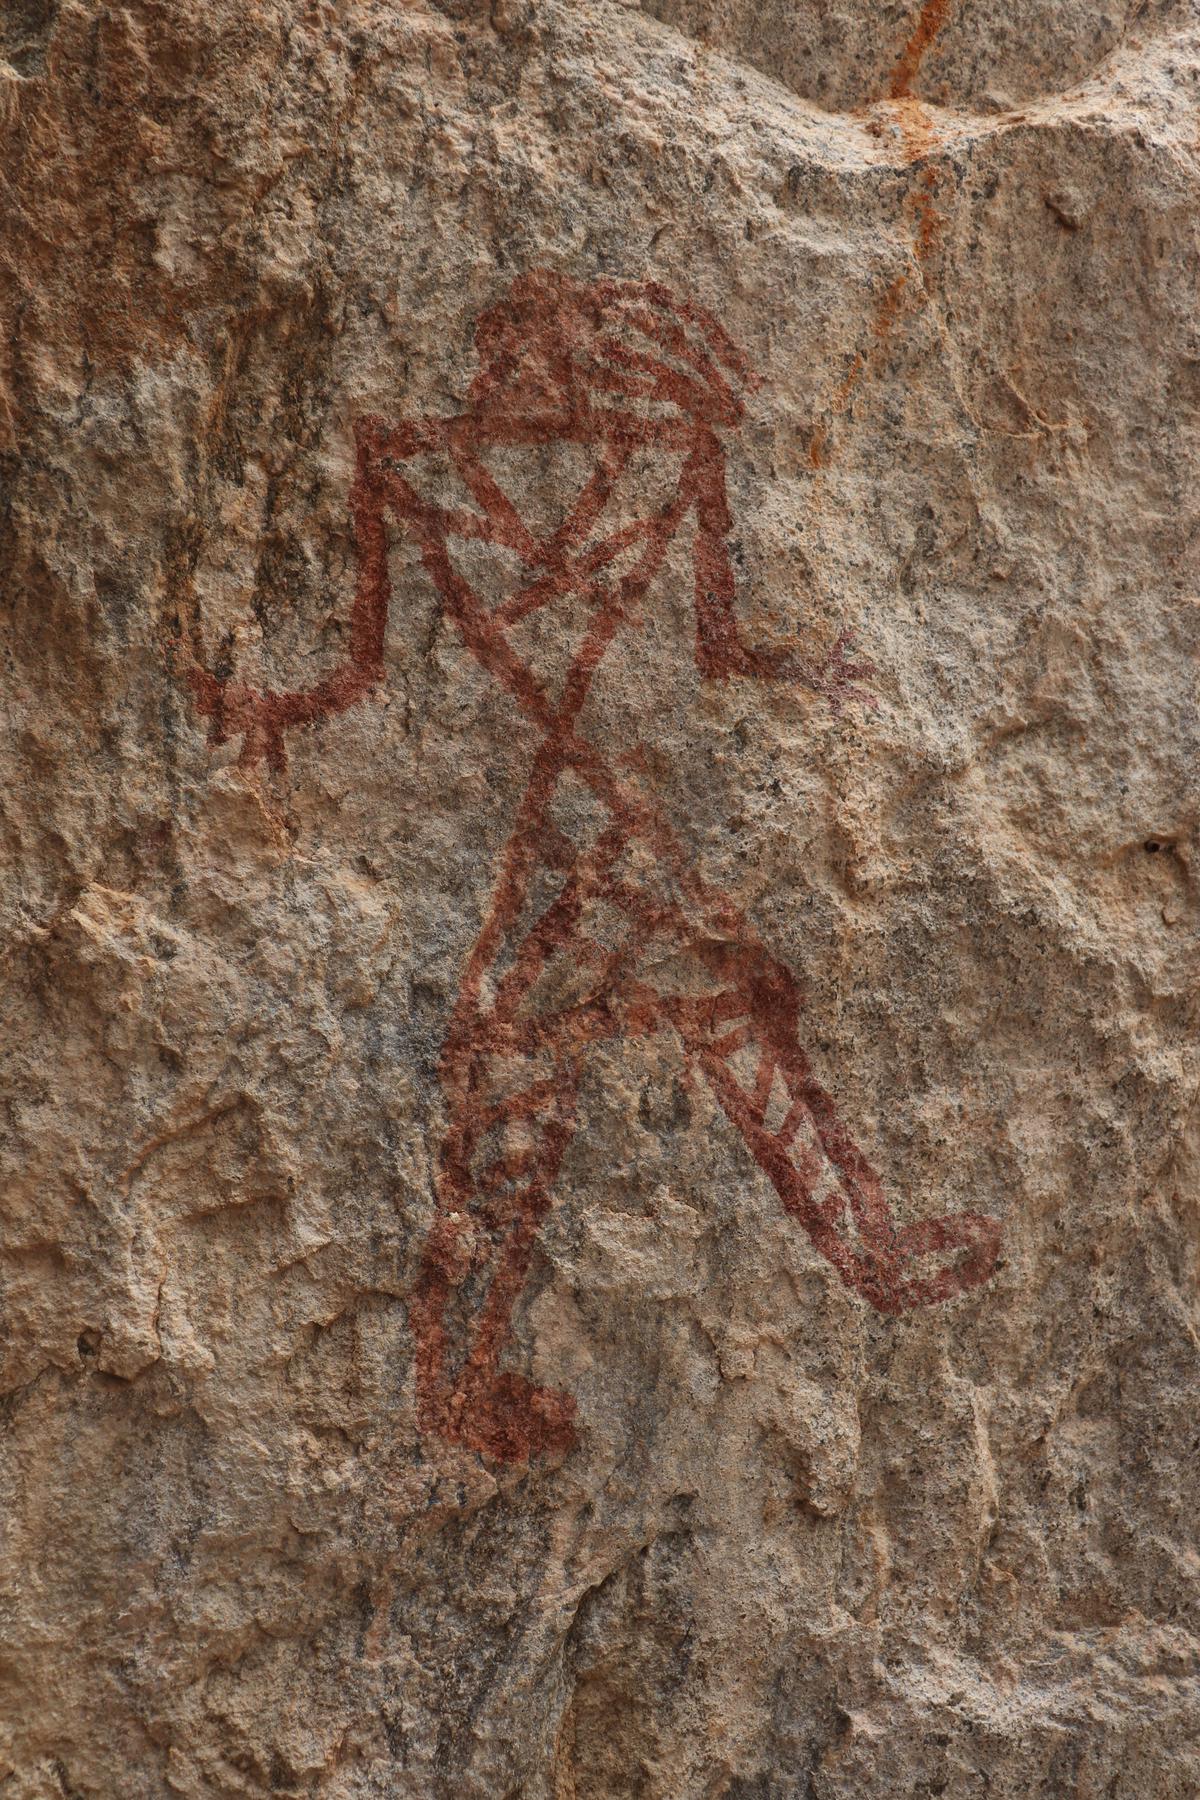 Fascinating rock art: Bird faced man in Azhagar Hills done in red ochre